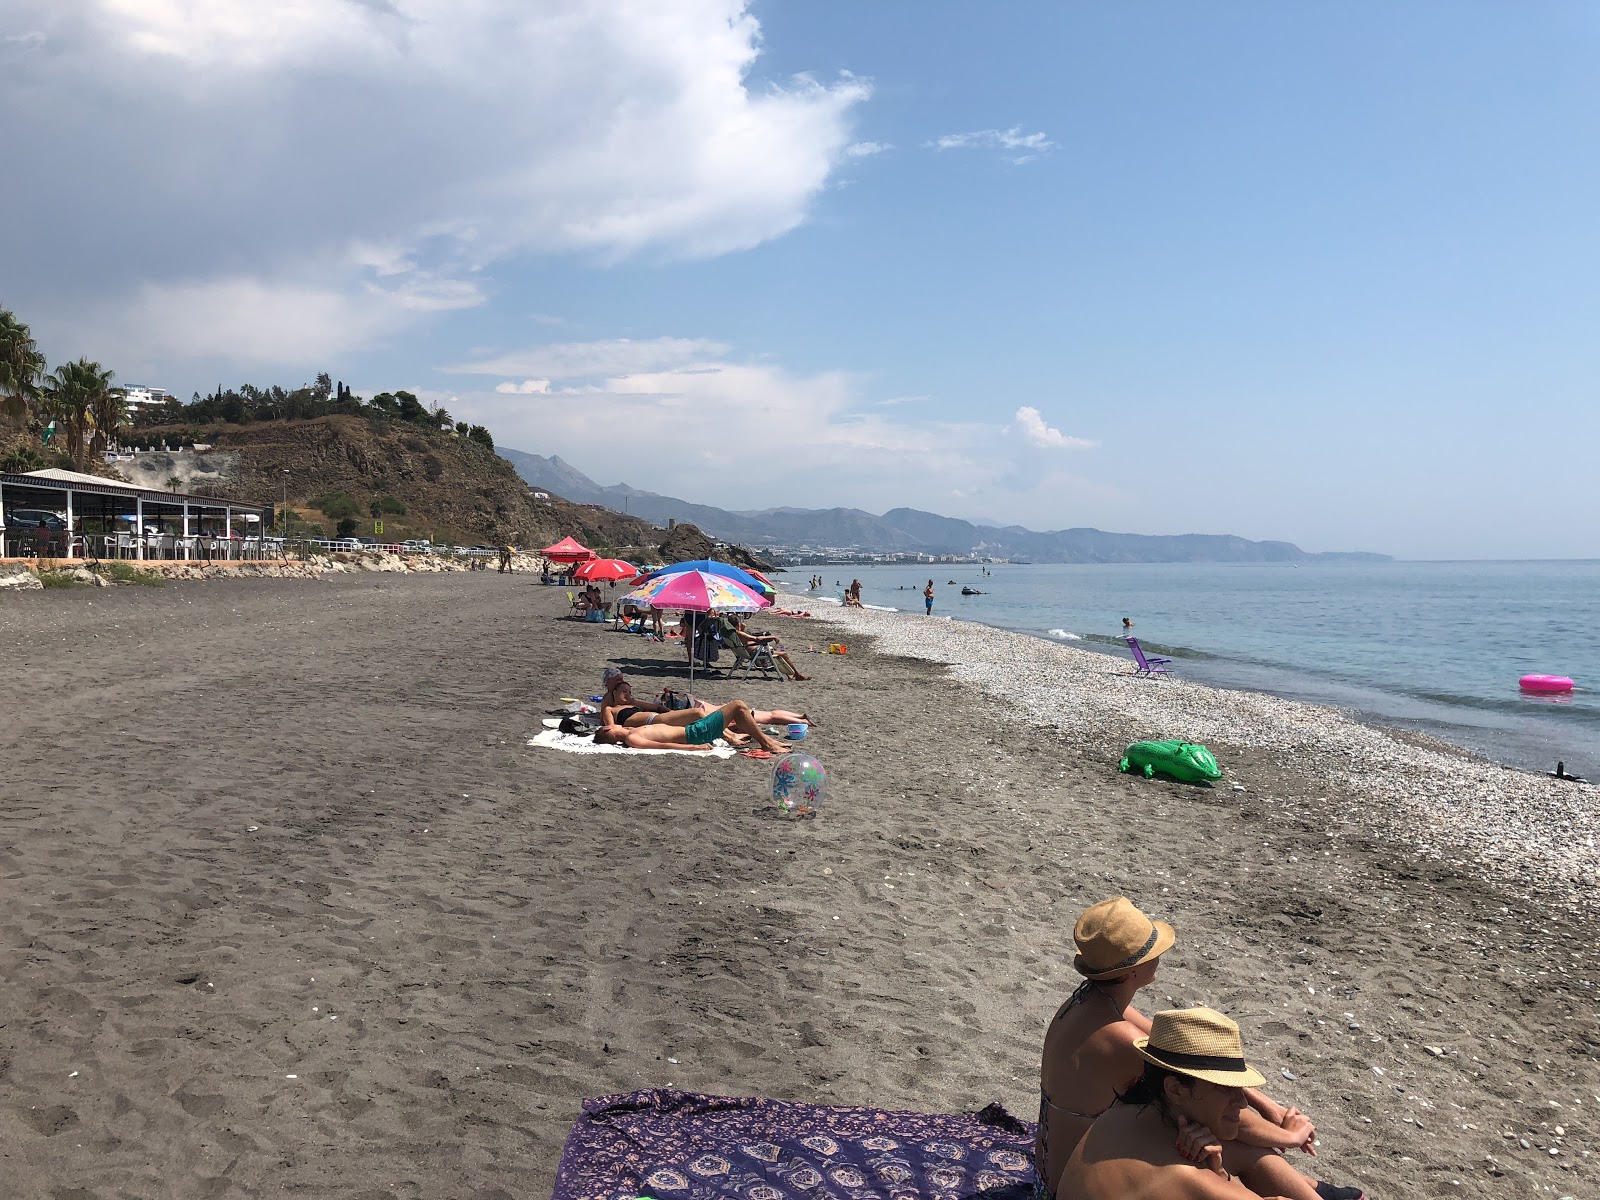 Playa el Penoncillo'in fotoğrafı gri kum yüzey ile